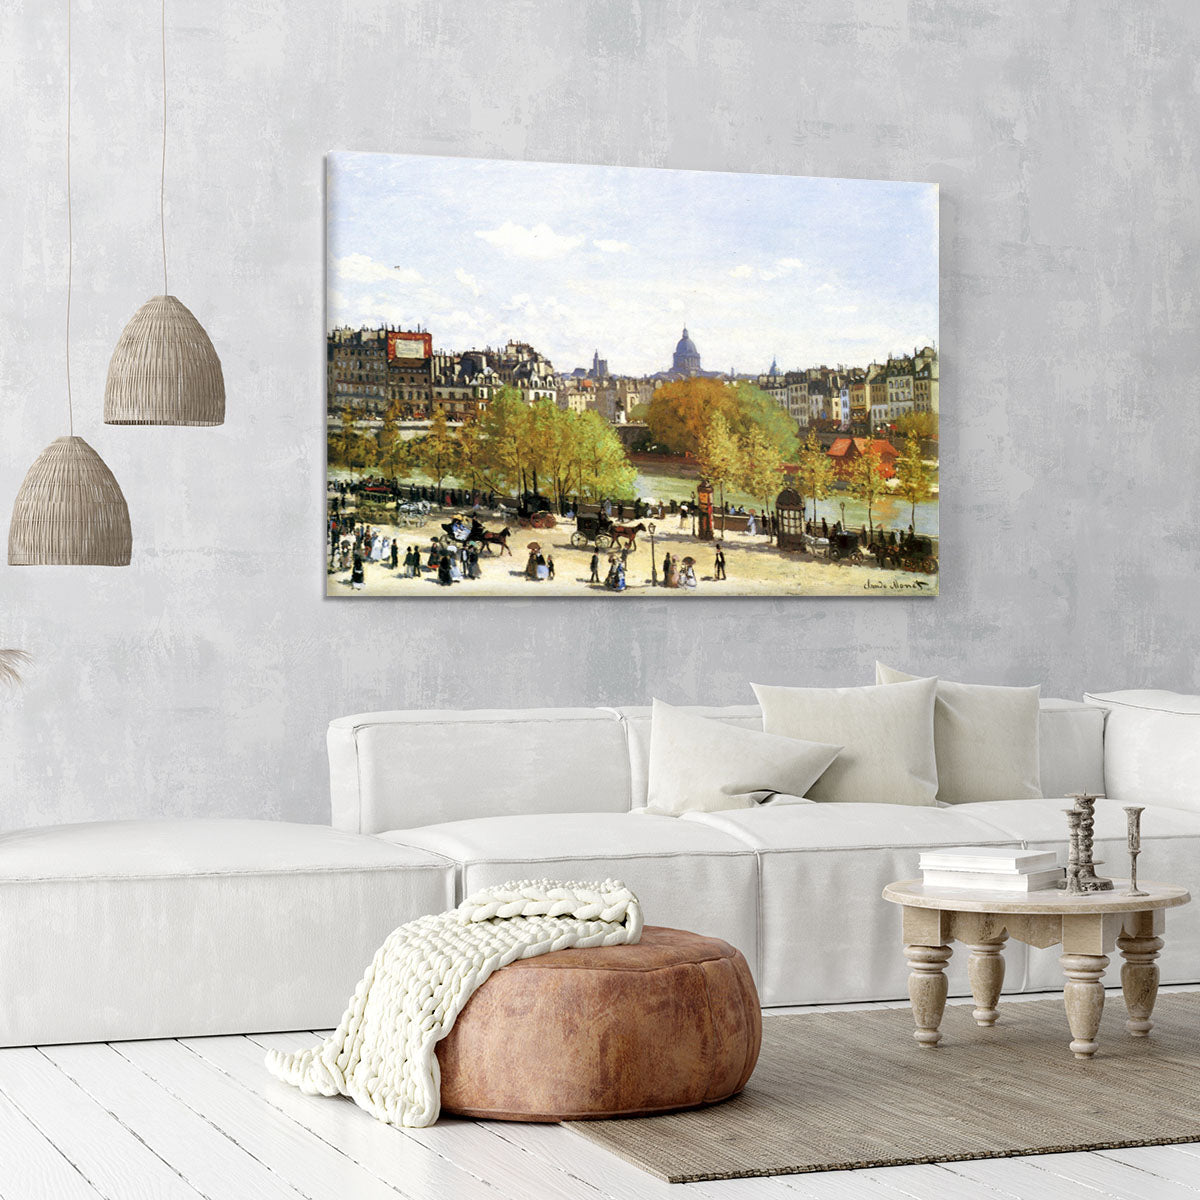 Le quai du Louvre by Monet Canvas Print or Poster - Canvas Art Rocks - 6